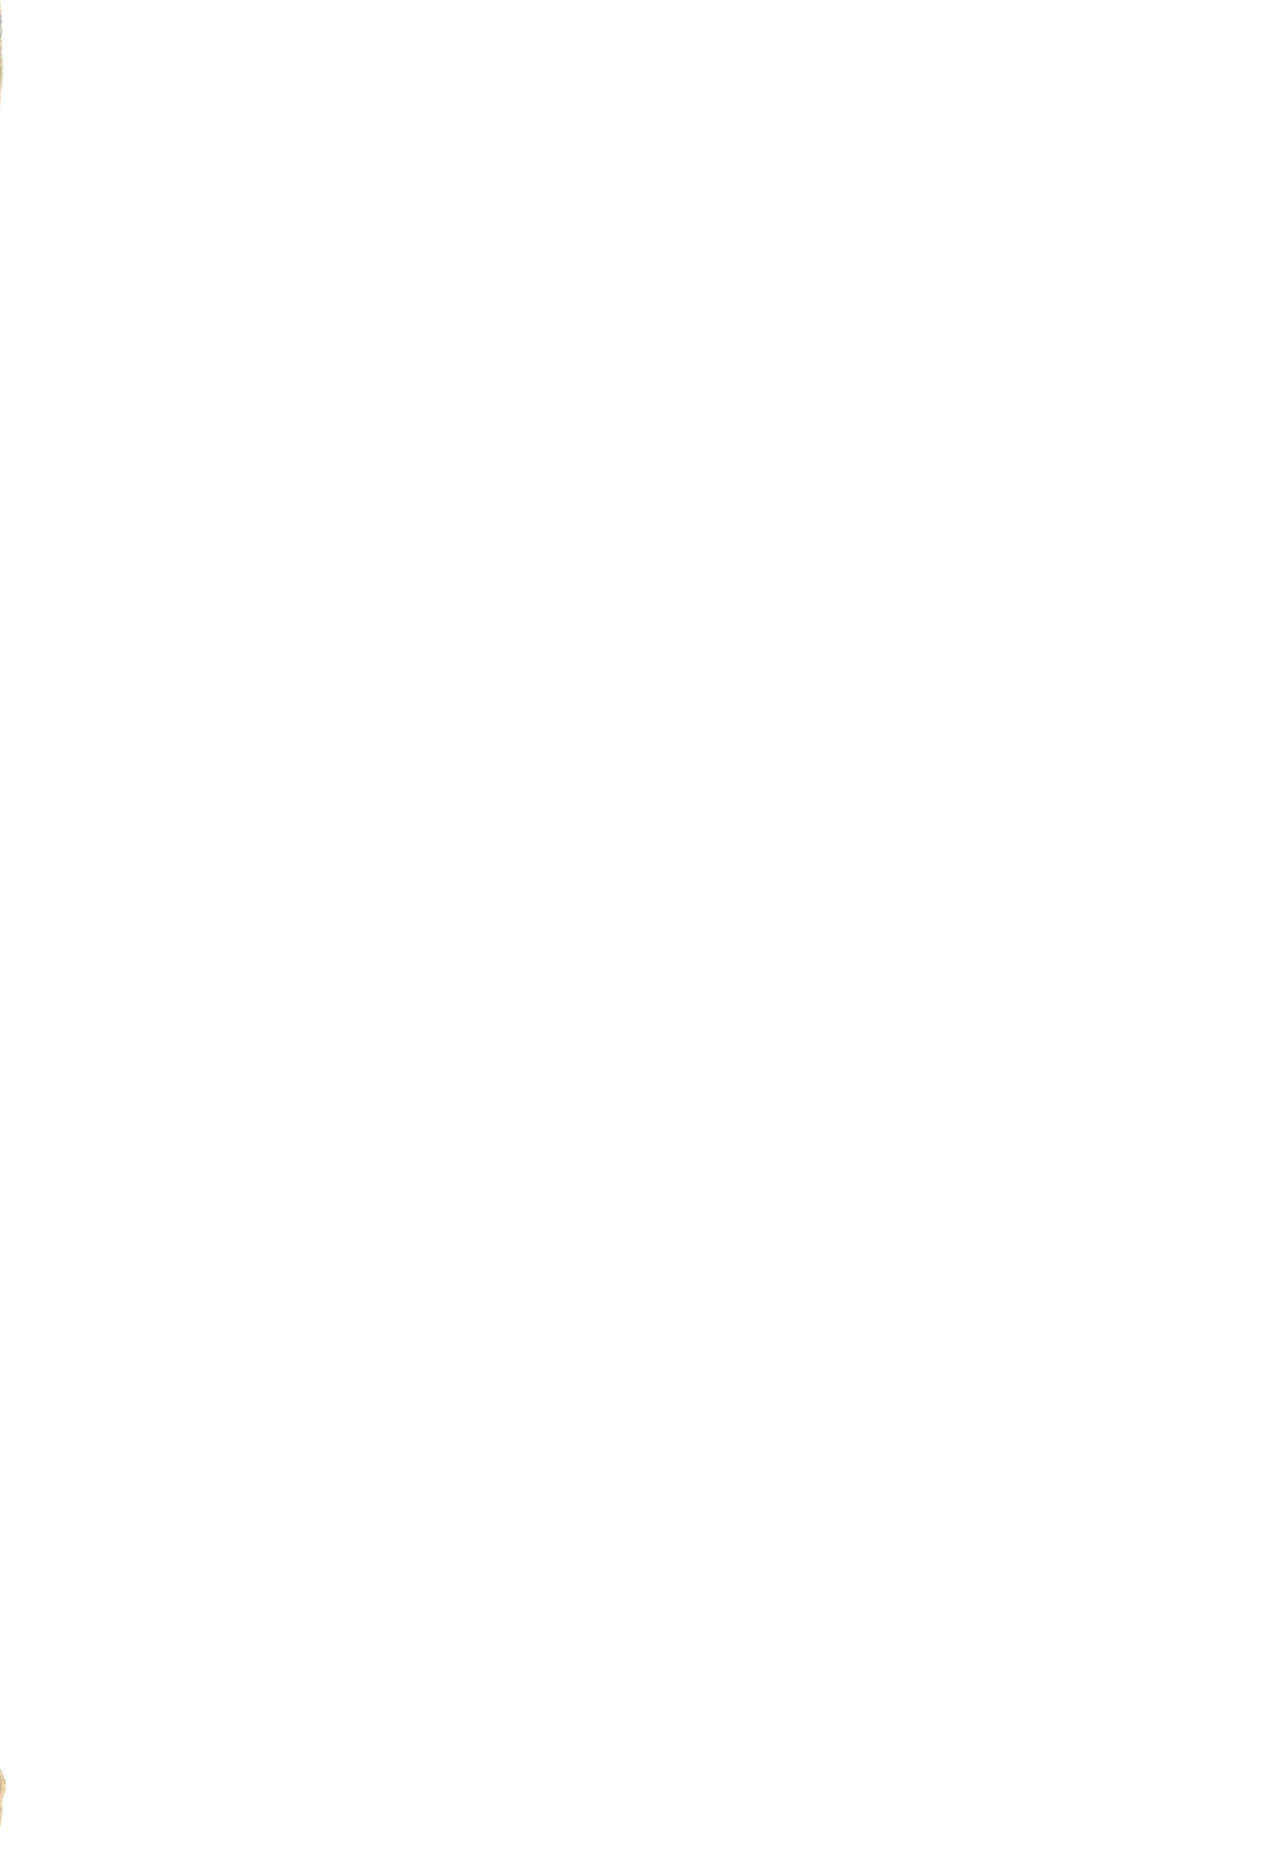 (COMIC1☆16) [大艦巨砲組 (あずさのりへー)] 橘さんのスリ穴バチタ (アイドルマスター シンデレラガールズ) [英訳]